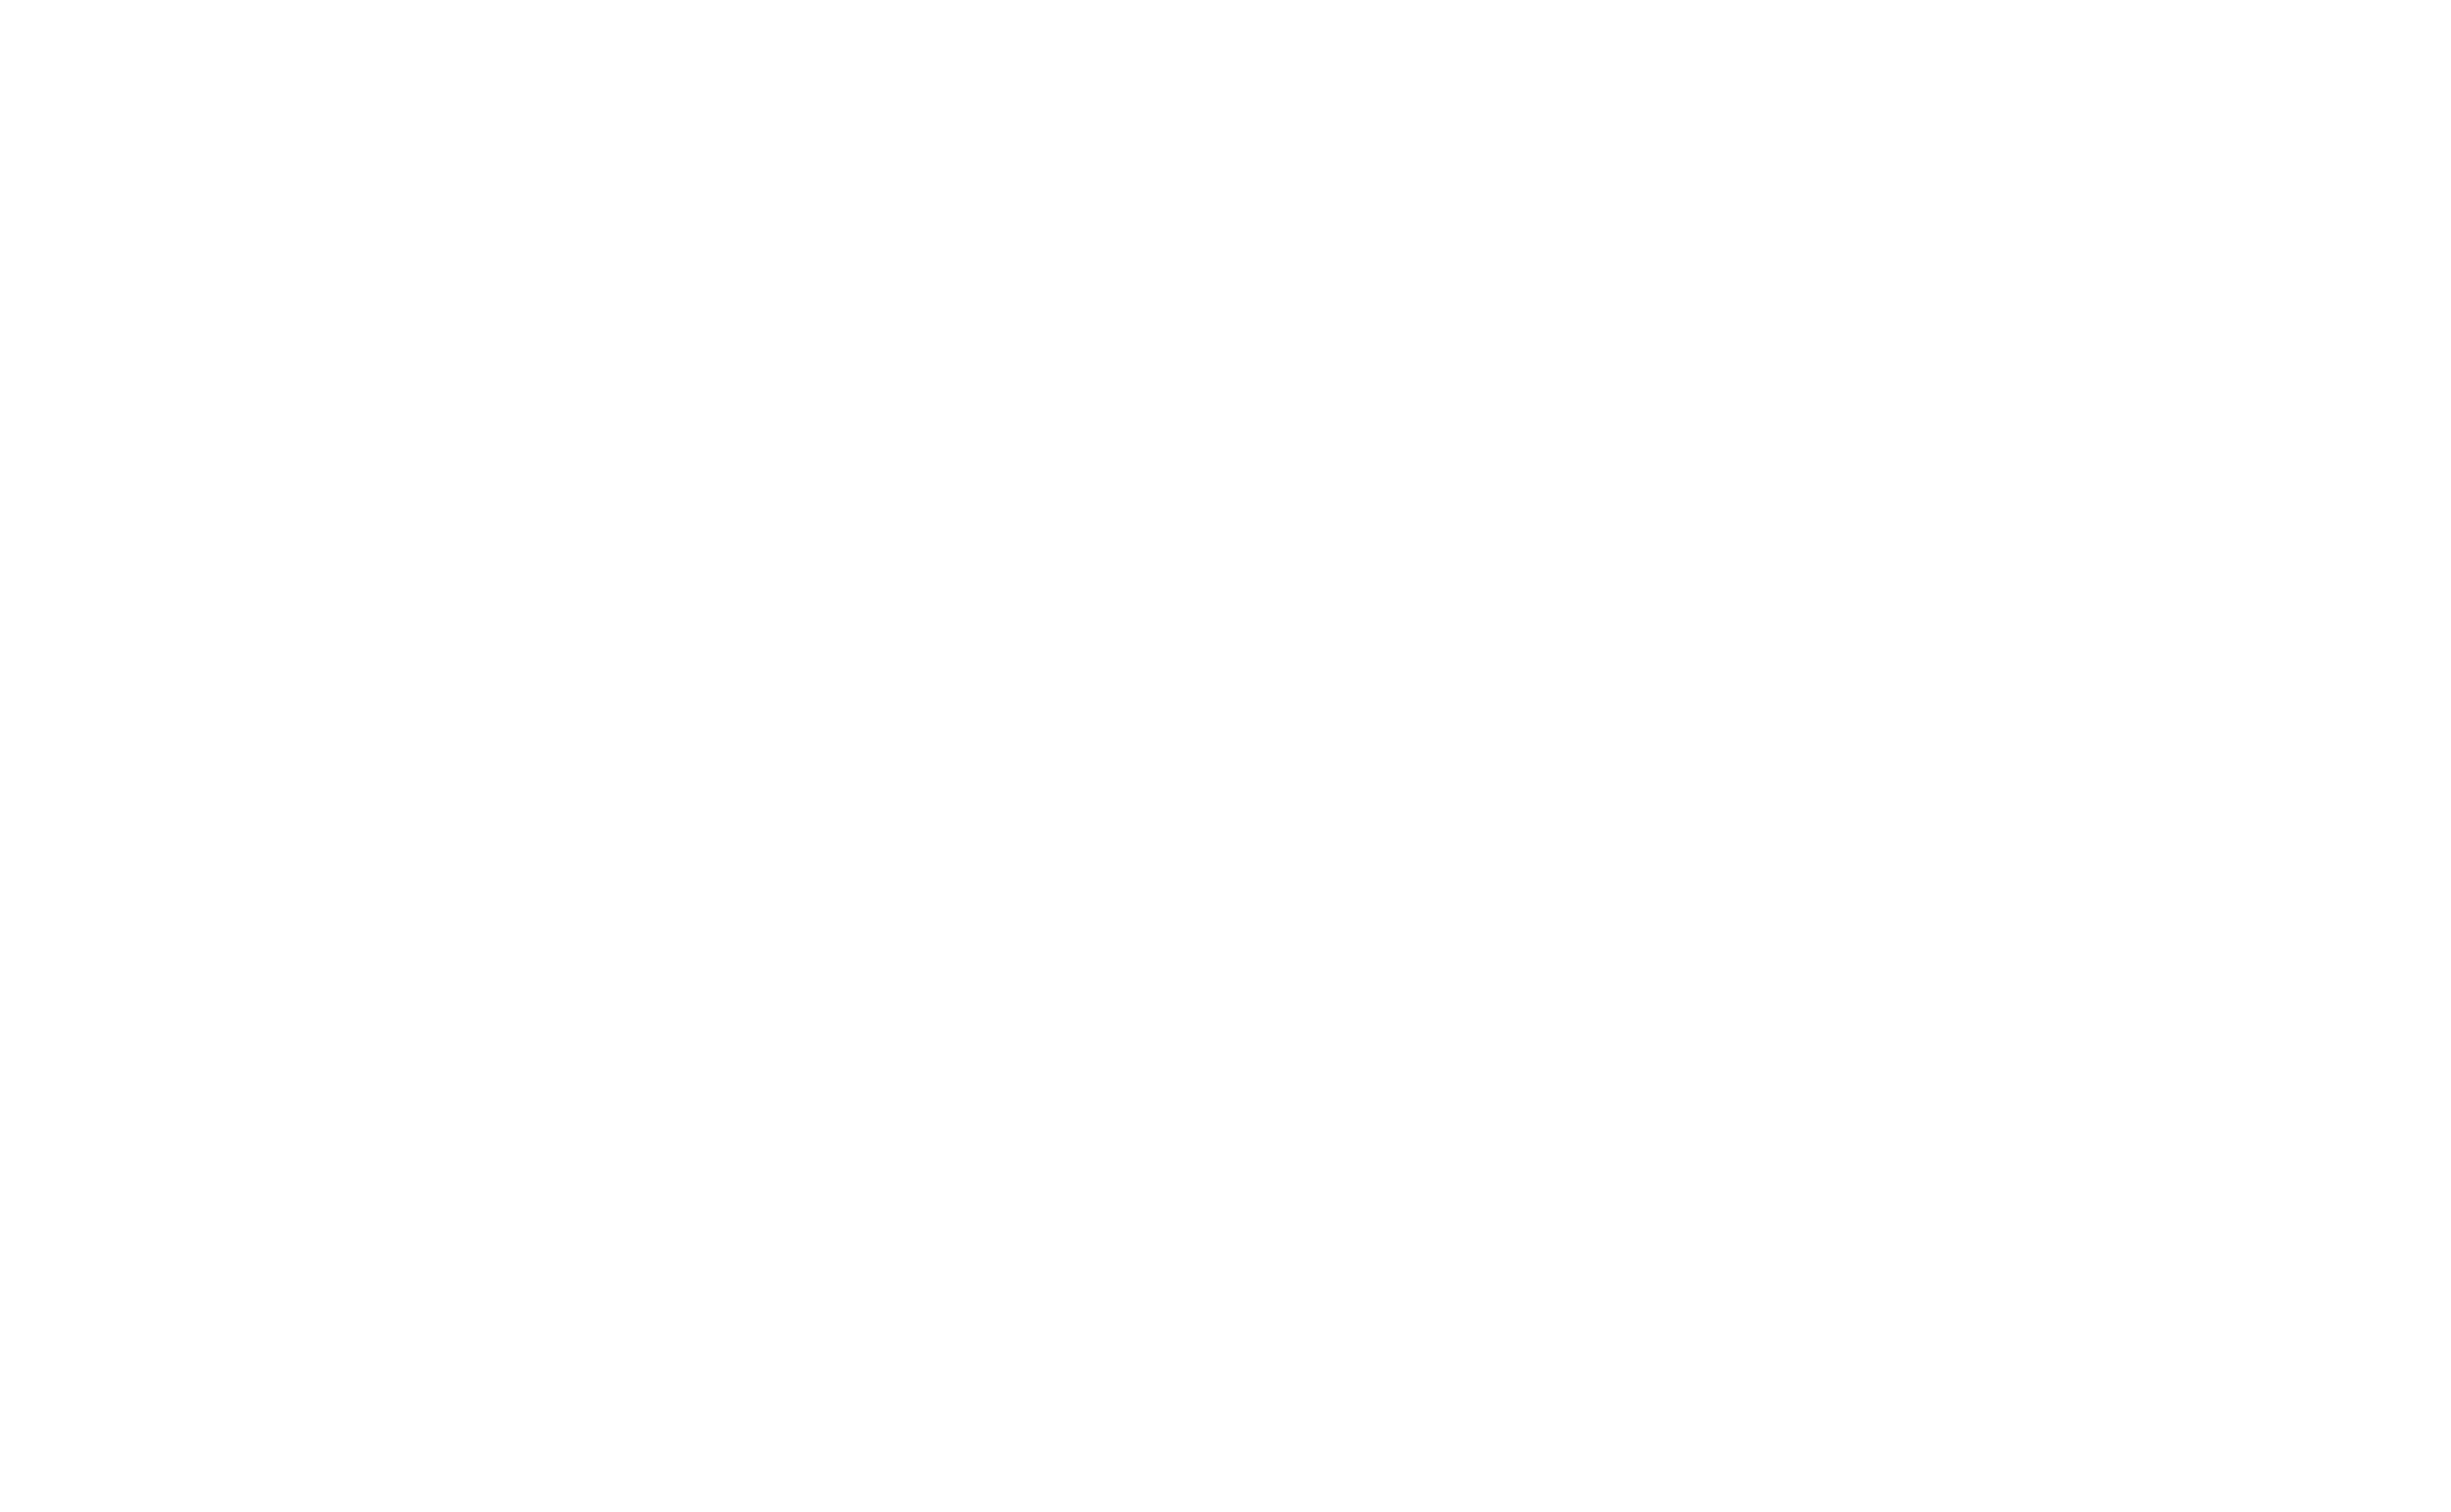 Beach of Dreams